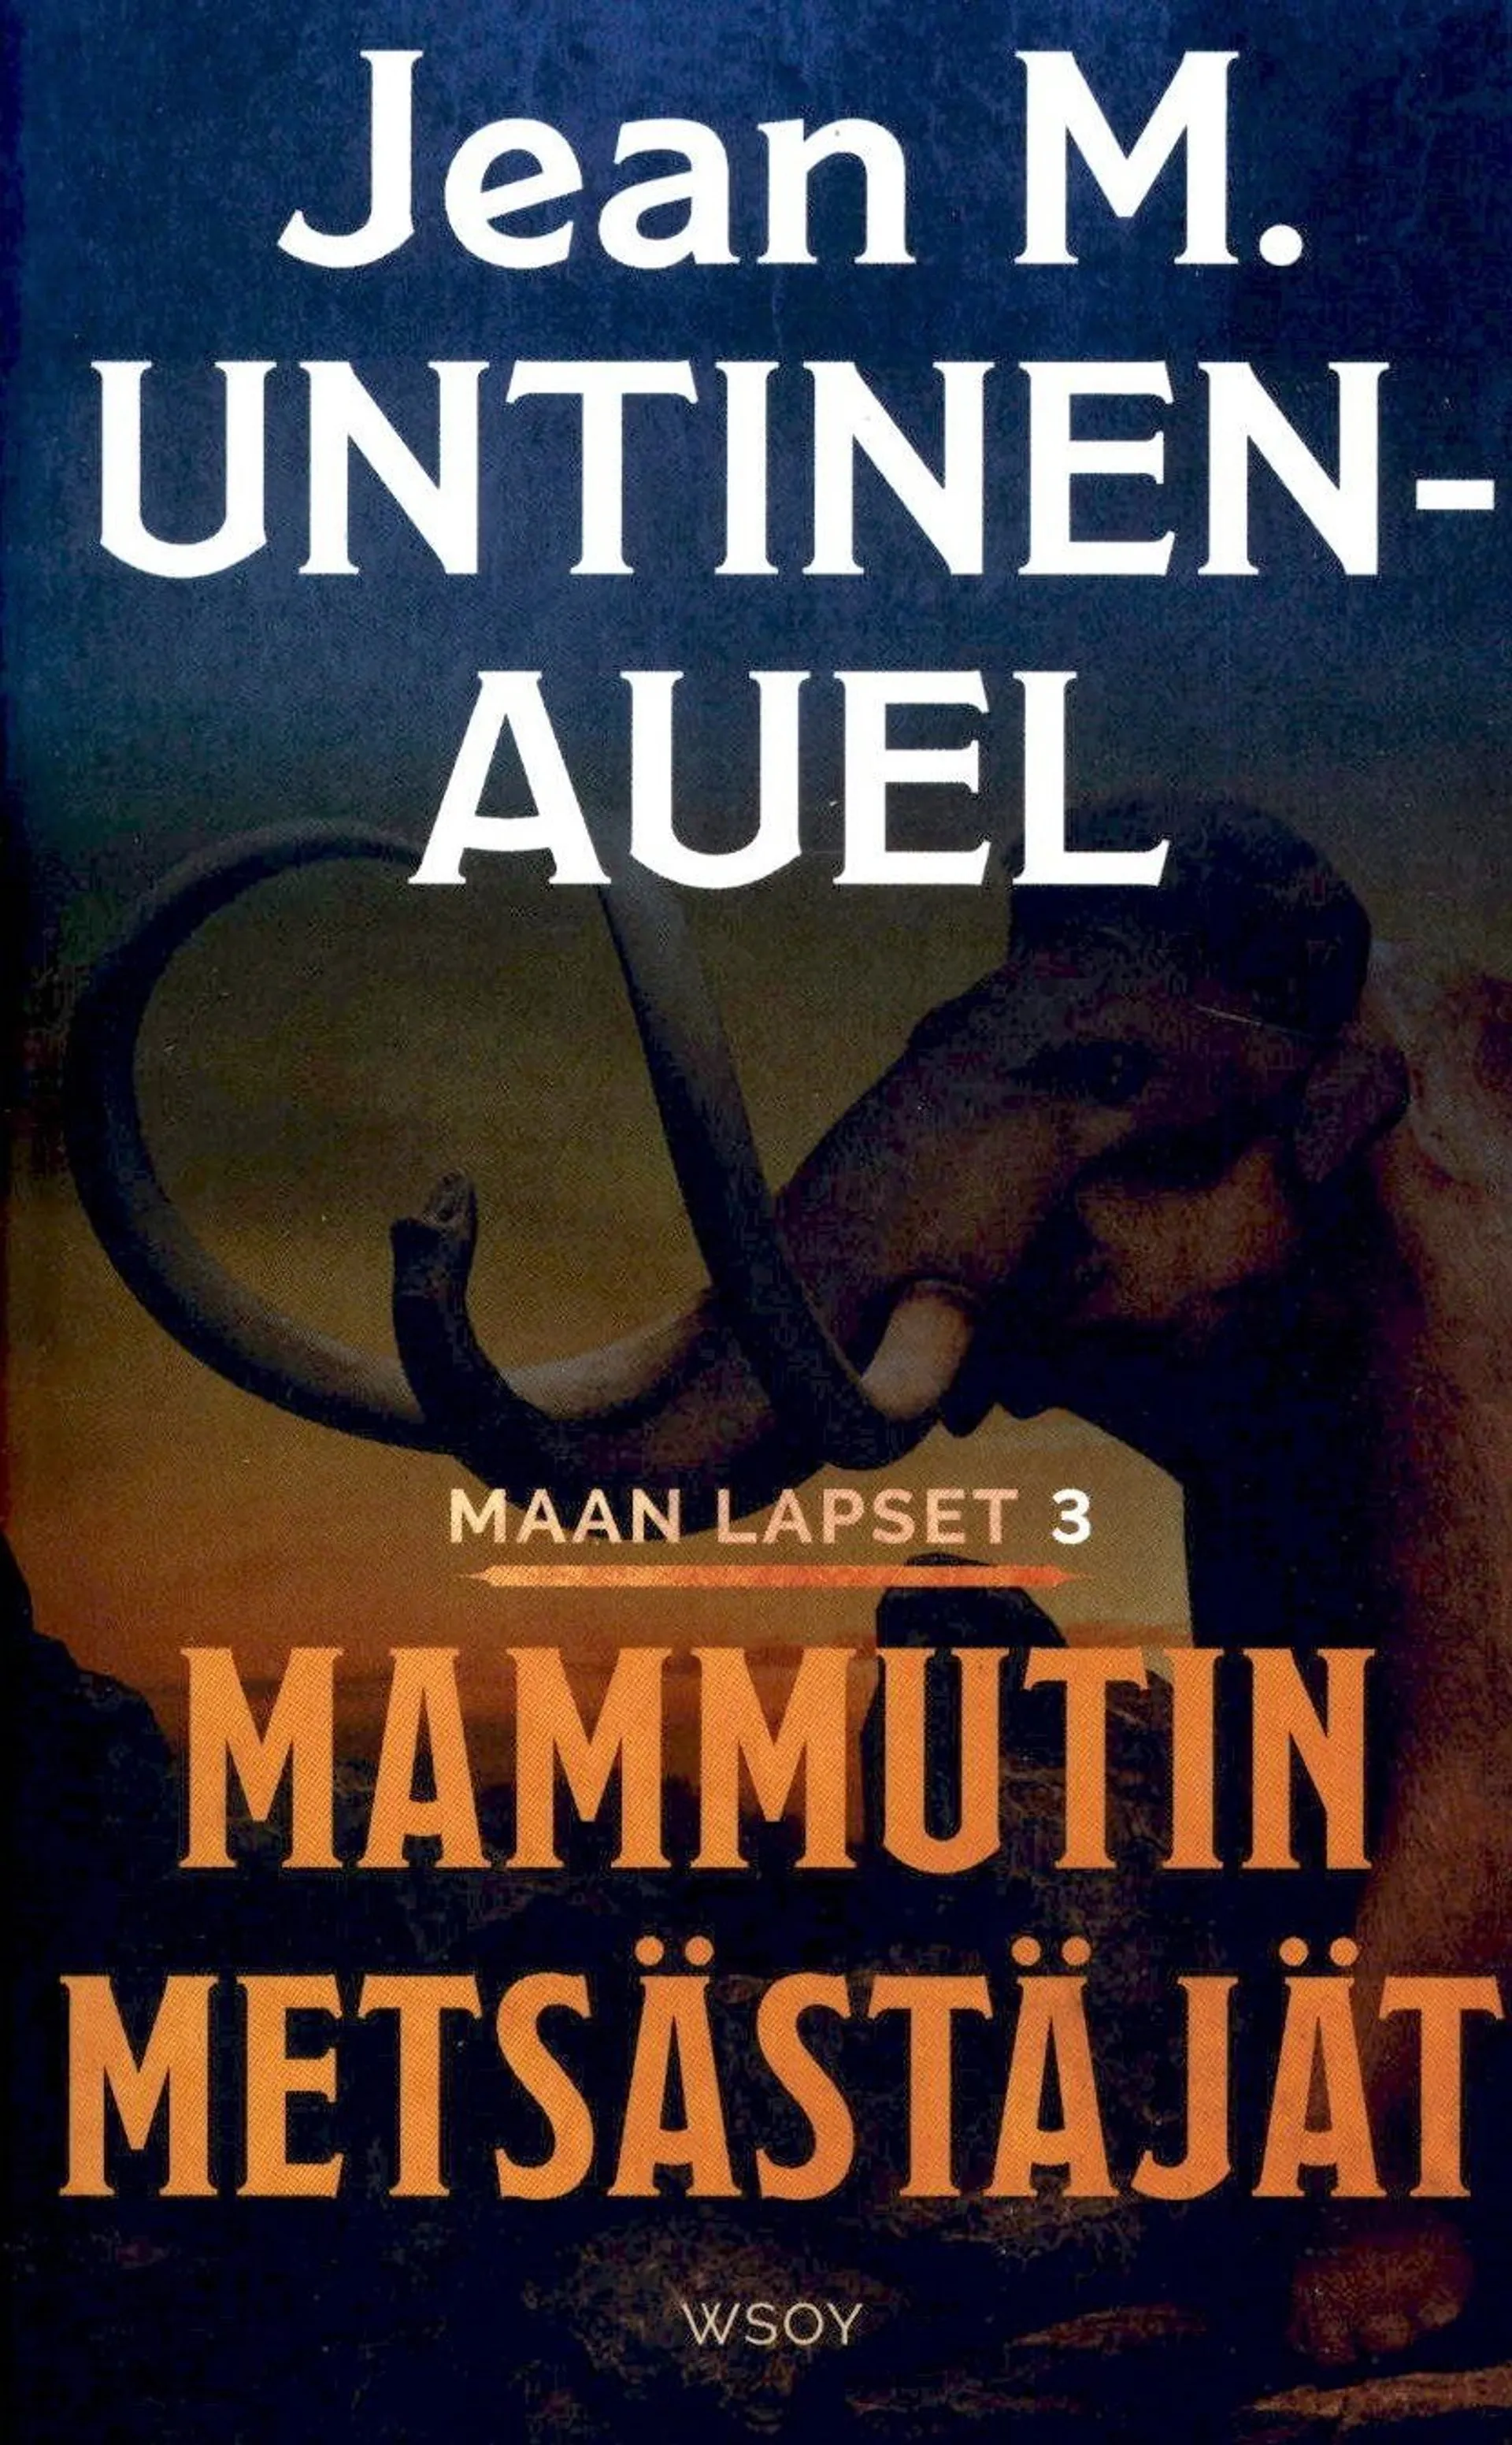 Untinen-Auel, Jean M.: Mammutin metsästä